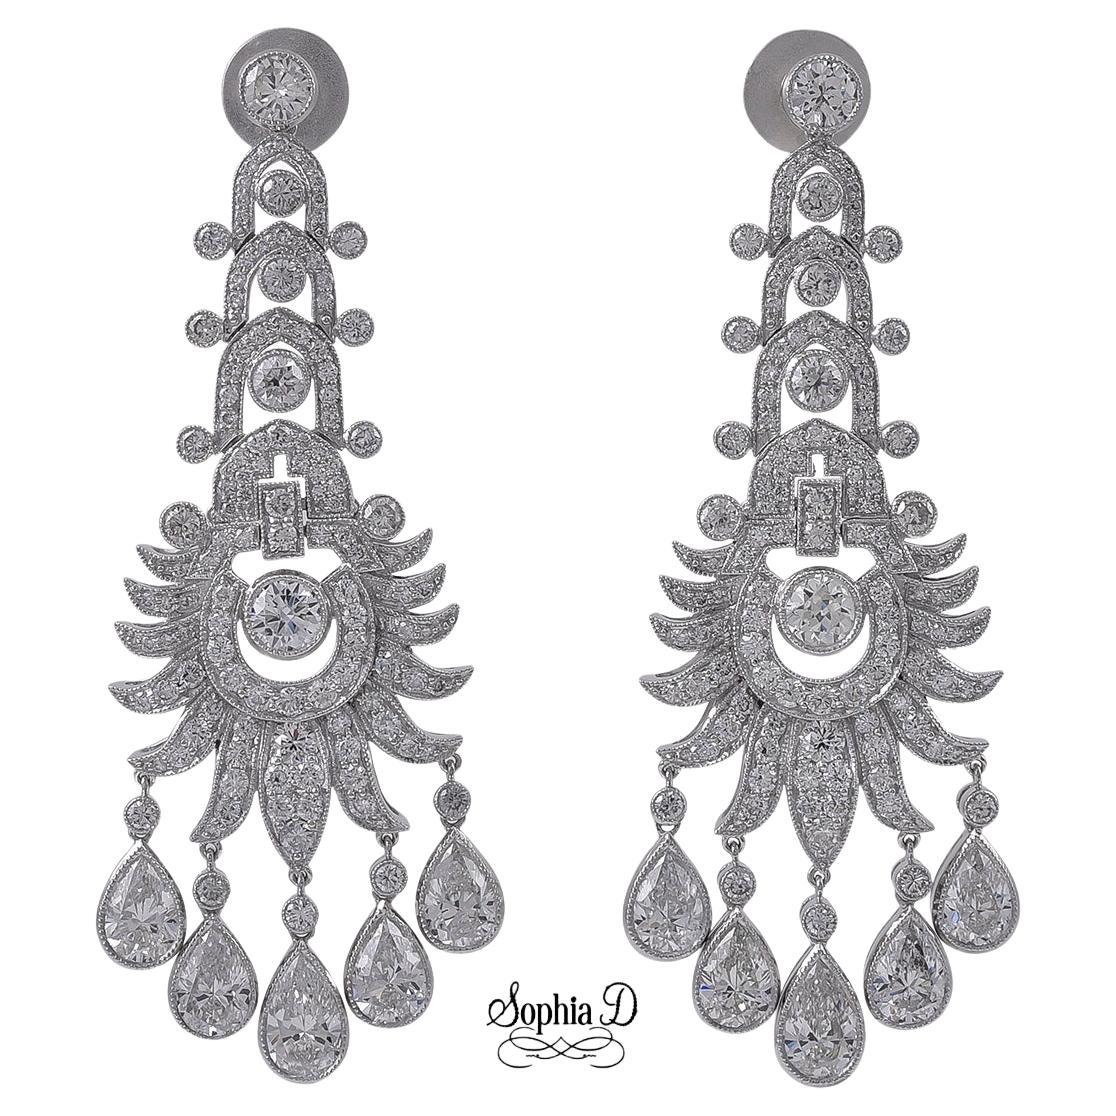 Sophia D. All Diamond Earrings in Platinum